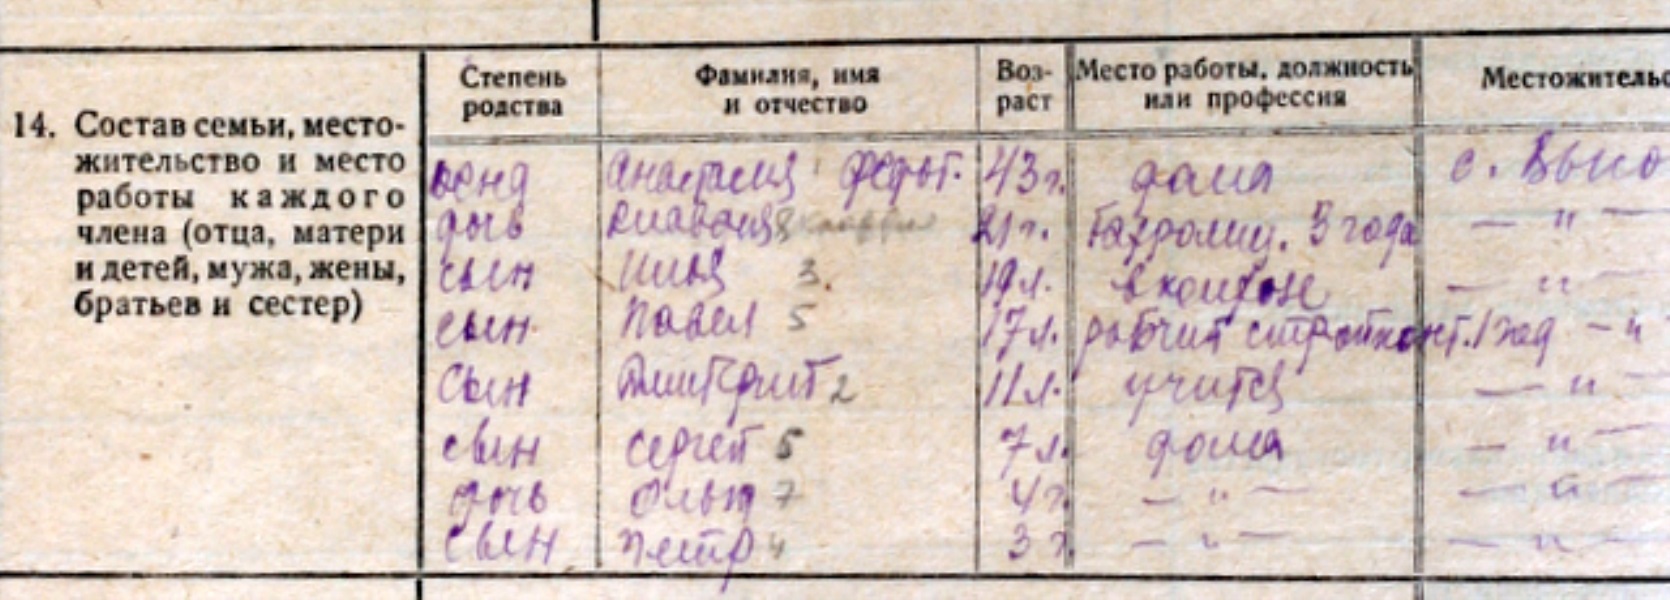 Фрагмент из анкеты Василия Степановича 1933 года. Петру 3 года.